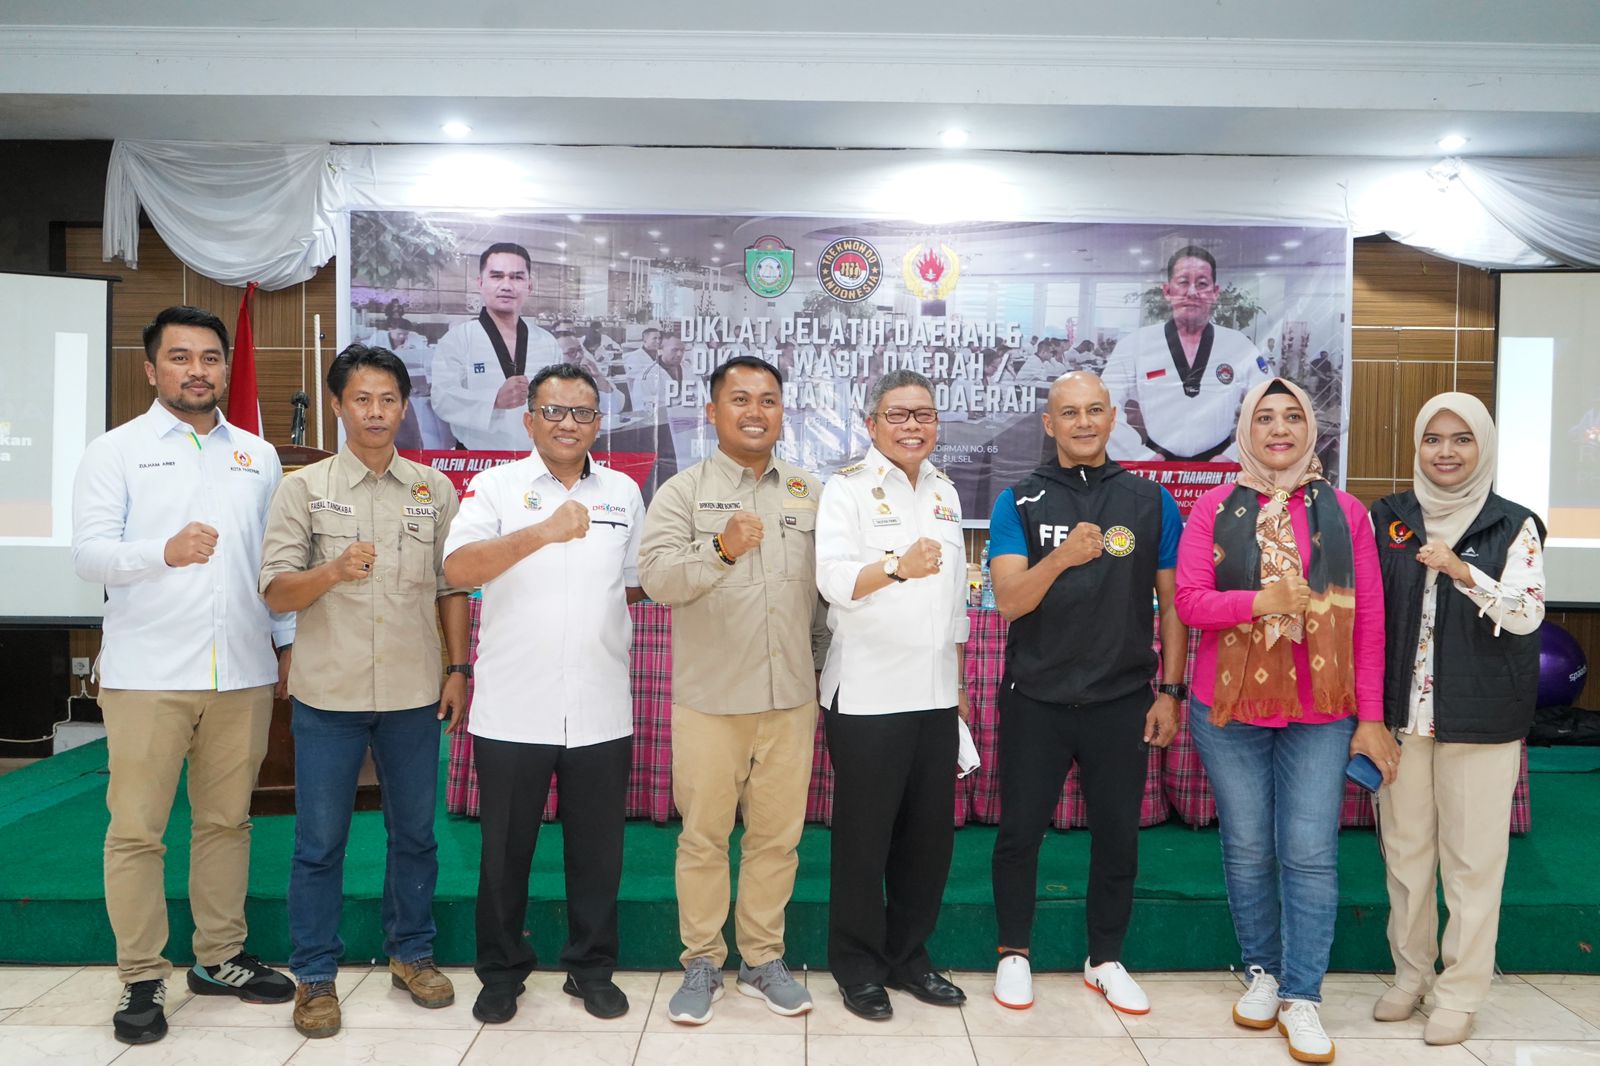 Diklat Pelatih dan Wasit Taekwondo Sulsel, Ketua KONI Parepare Zulham Arief Sebut Sarana Raih Prestasi